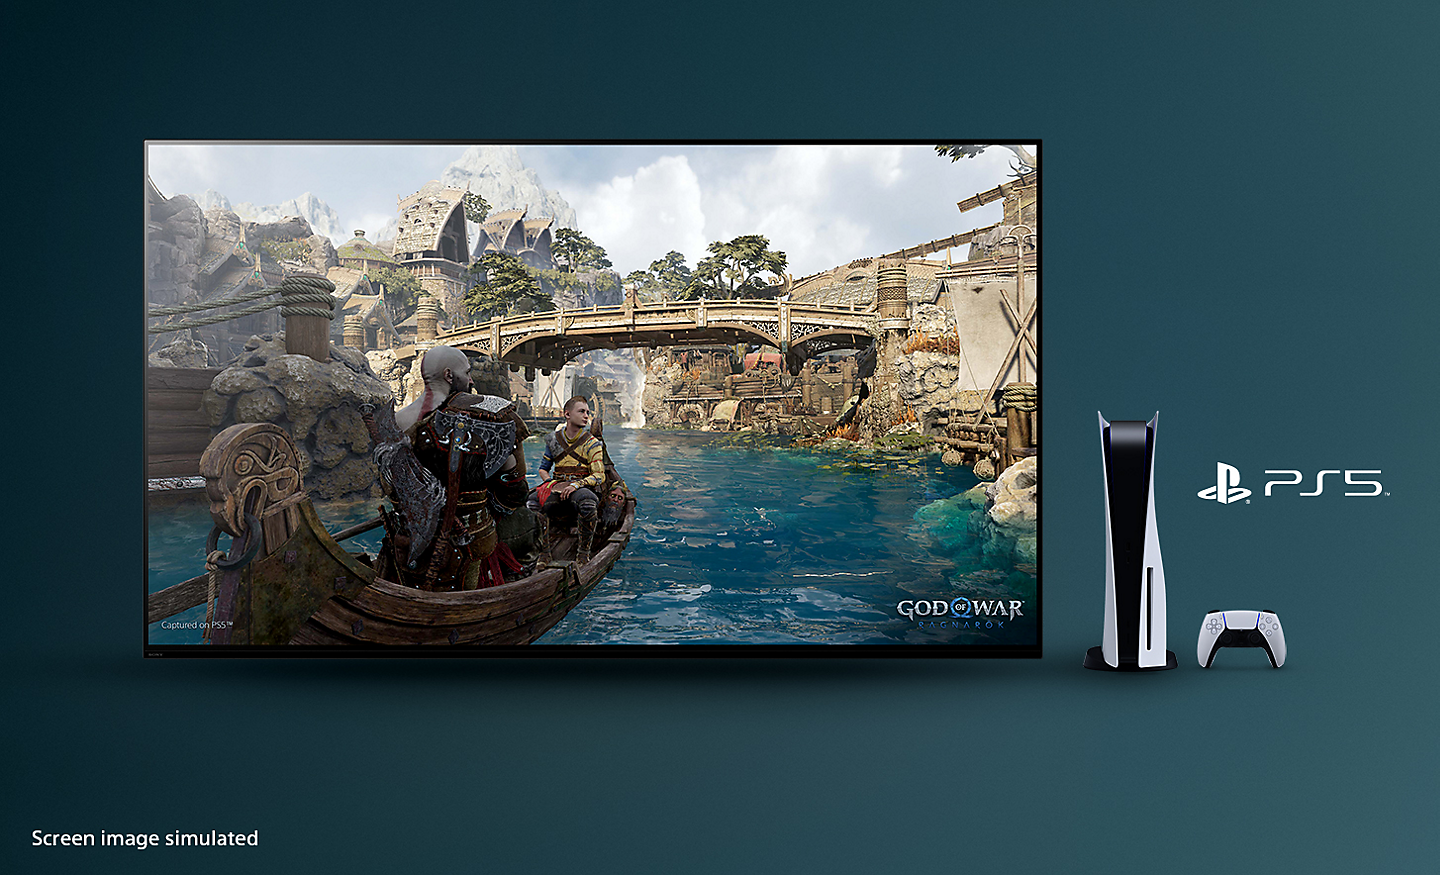 TV BRAVIA với ảnh chụp màn hình God of War: Ragnarok thể hiện một chiếc thuyền trên sông và cây cầu trên cảnh nền với máy chơi game PS5™, tay cầm và logo PS5™ bên phải TV